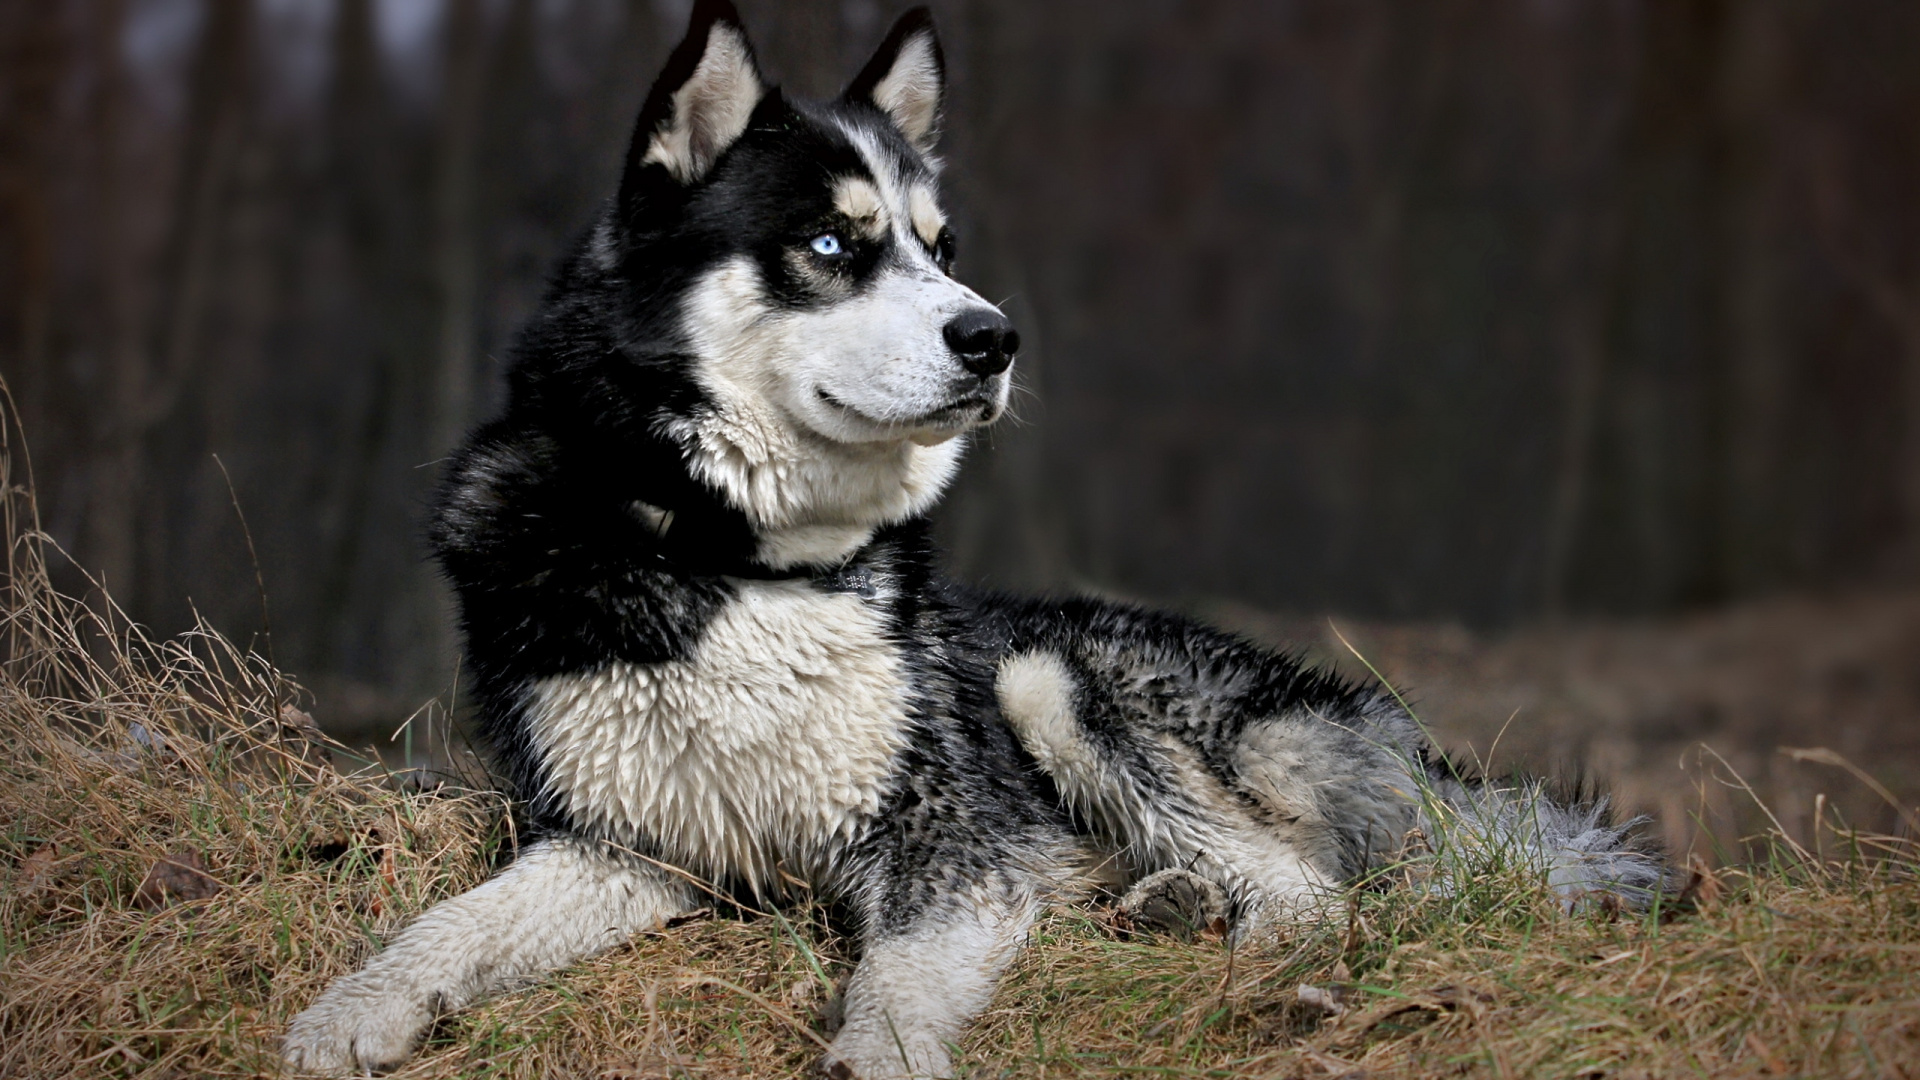 小狗, 阿拉斯加雪橇犬, 品种的狗, 萨哈林赫斯基, Tamaskan狗 壁纸 1920x1080 允许